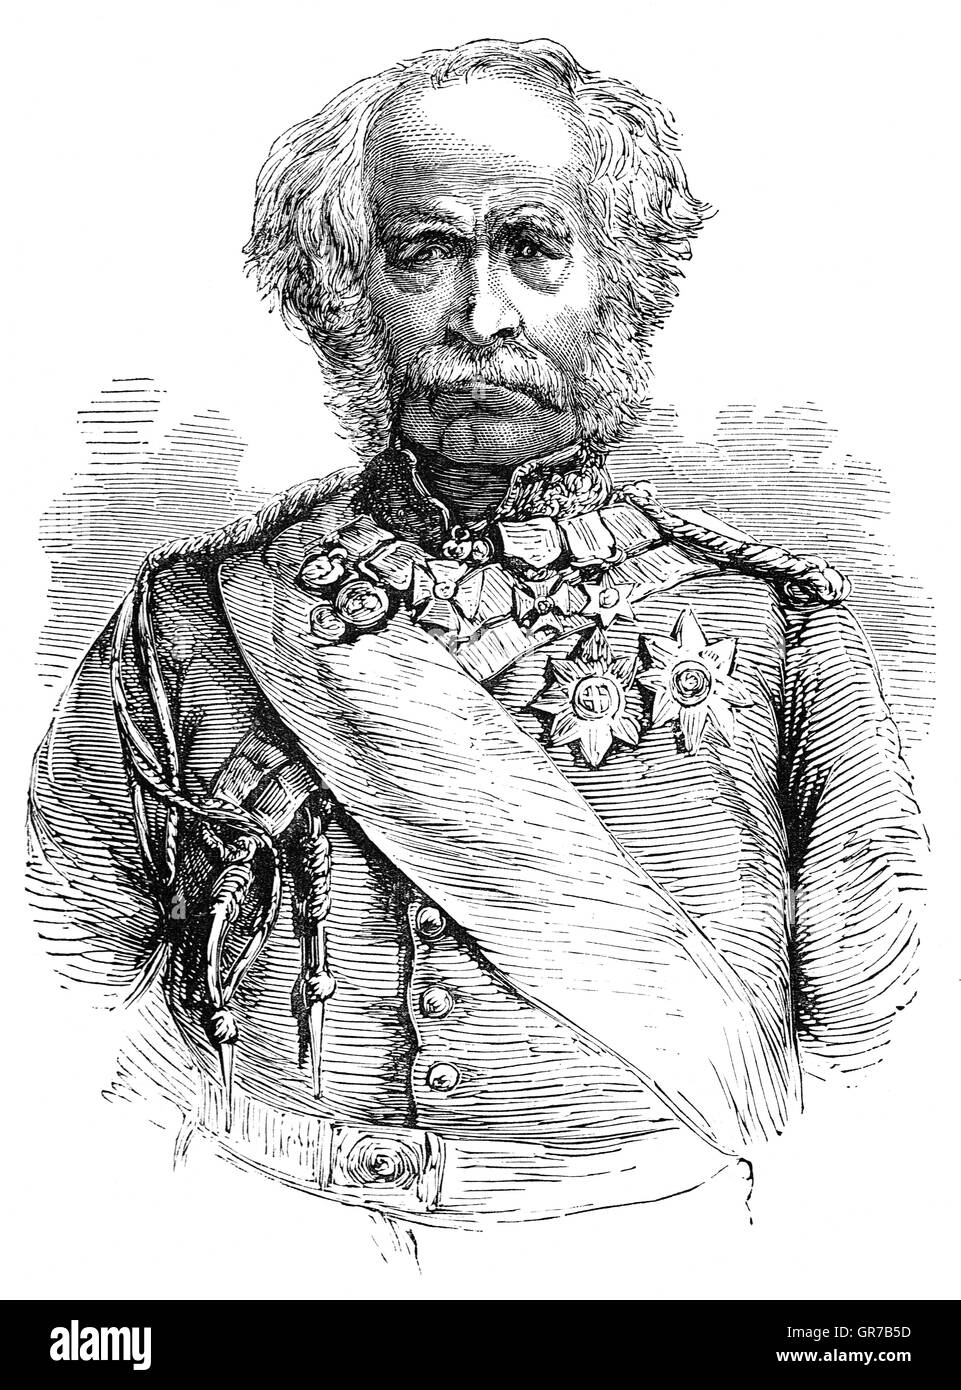 Le Maréchal Hugh Gough, 1er vicomte Gough,(1779 - 1869) était un officier de l'armée britannique. Il commande le 2e Bataillon du 87e (Royal Irish Fusiliers) Regiment of Foot pendant la guerre d'Espagne. Après avoir servi comme commandant en chef des forces britanniques en Chine au cours de la Première Guerre de l'opium, il devint le commandant en chef, l'Inde et a conduit les forces britanniques dans l'action contre l'Mahrattas les vaincre de façon décisive à l'issue de la campagne de Gwalior et puis commanda les troupes qui défait les Sikhs pendant la Première Guerre Anglo-Sikh Anglo-Sikh et la seconde guerre mondiale. Banque D'Images